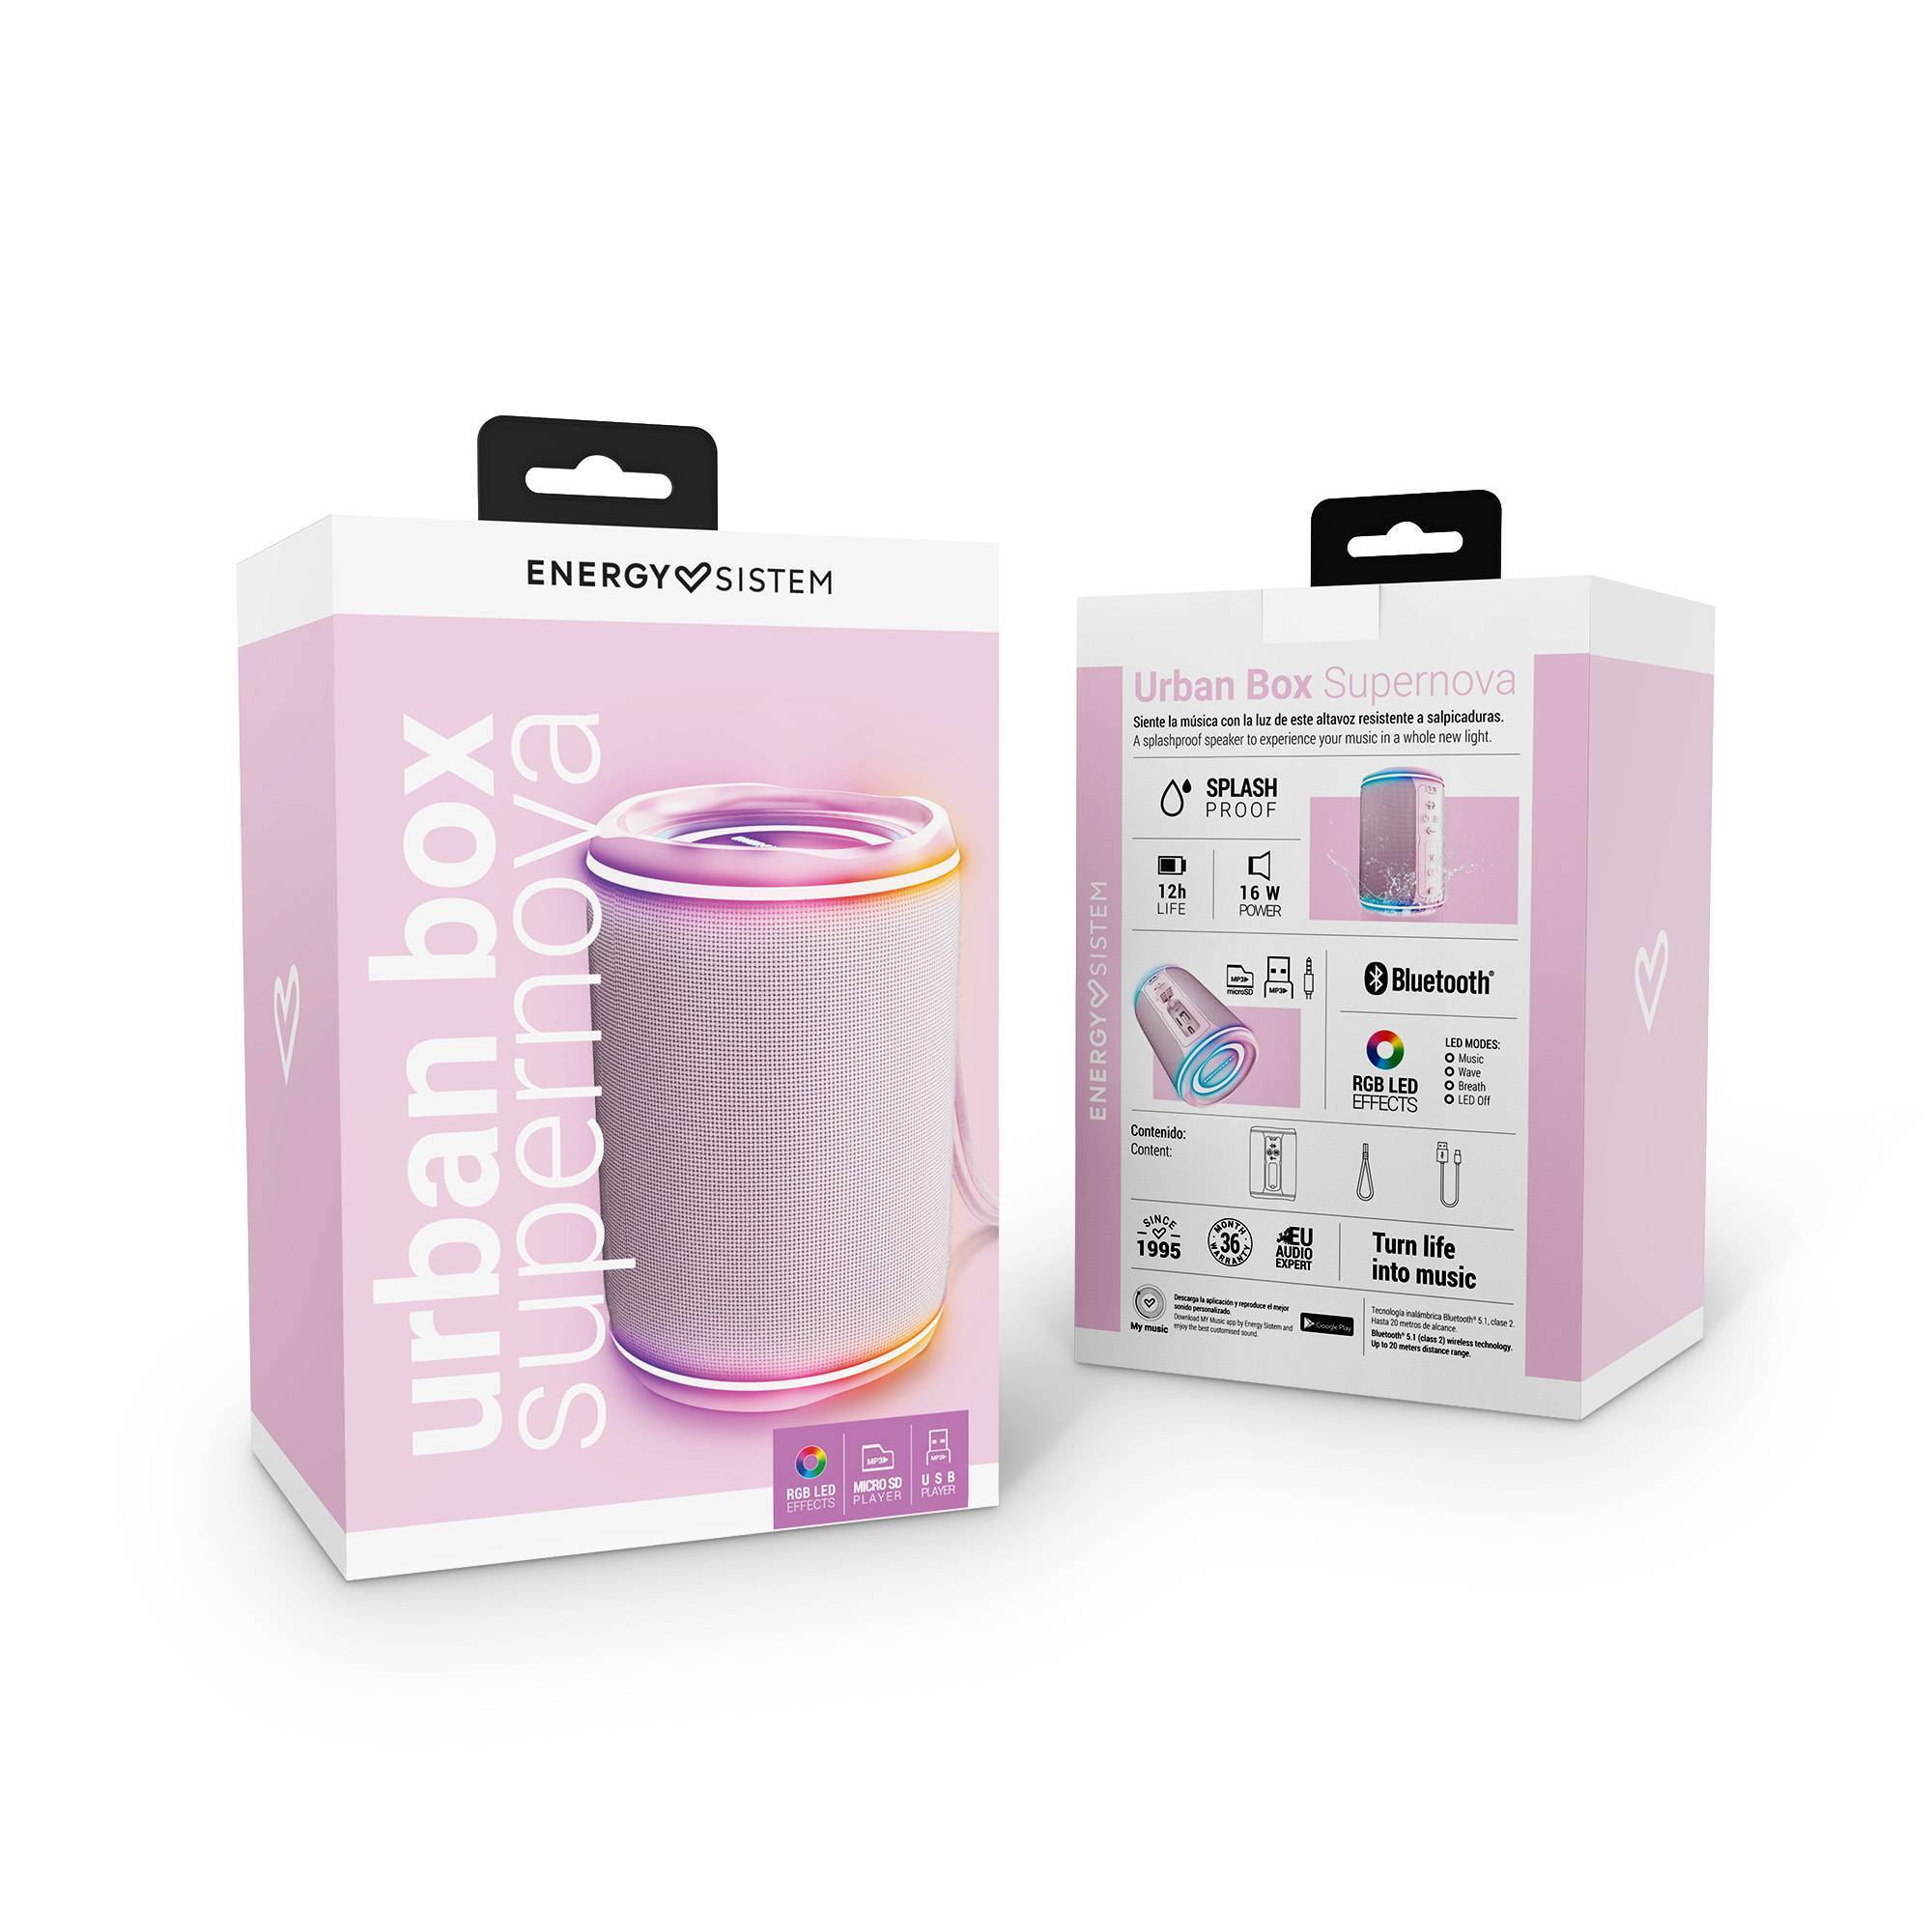 Urban Box Supernova portable speaker's packaging